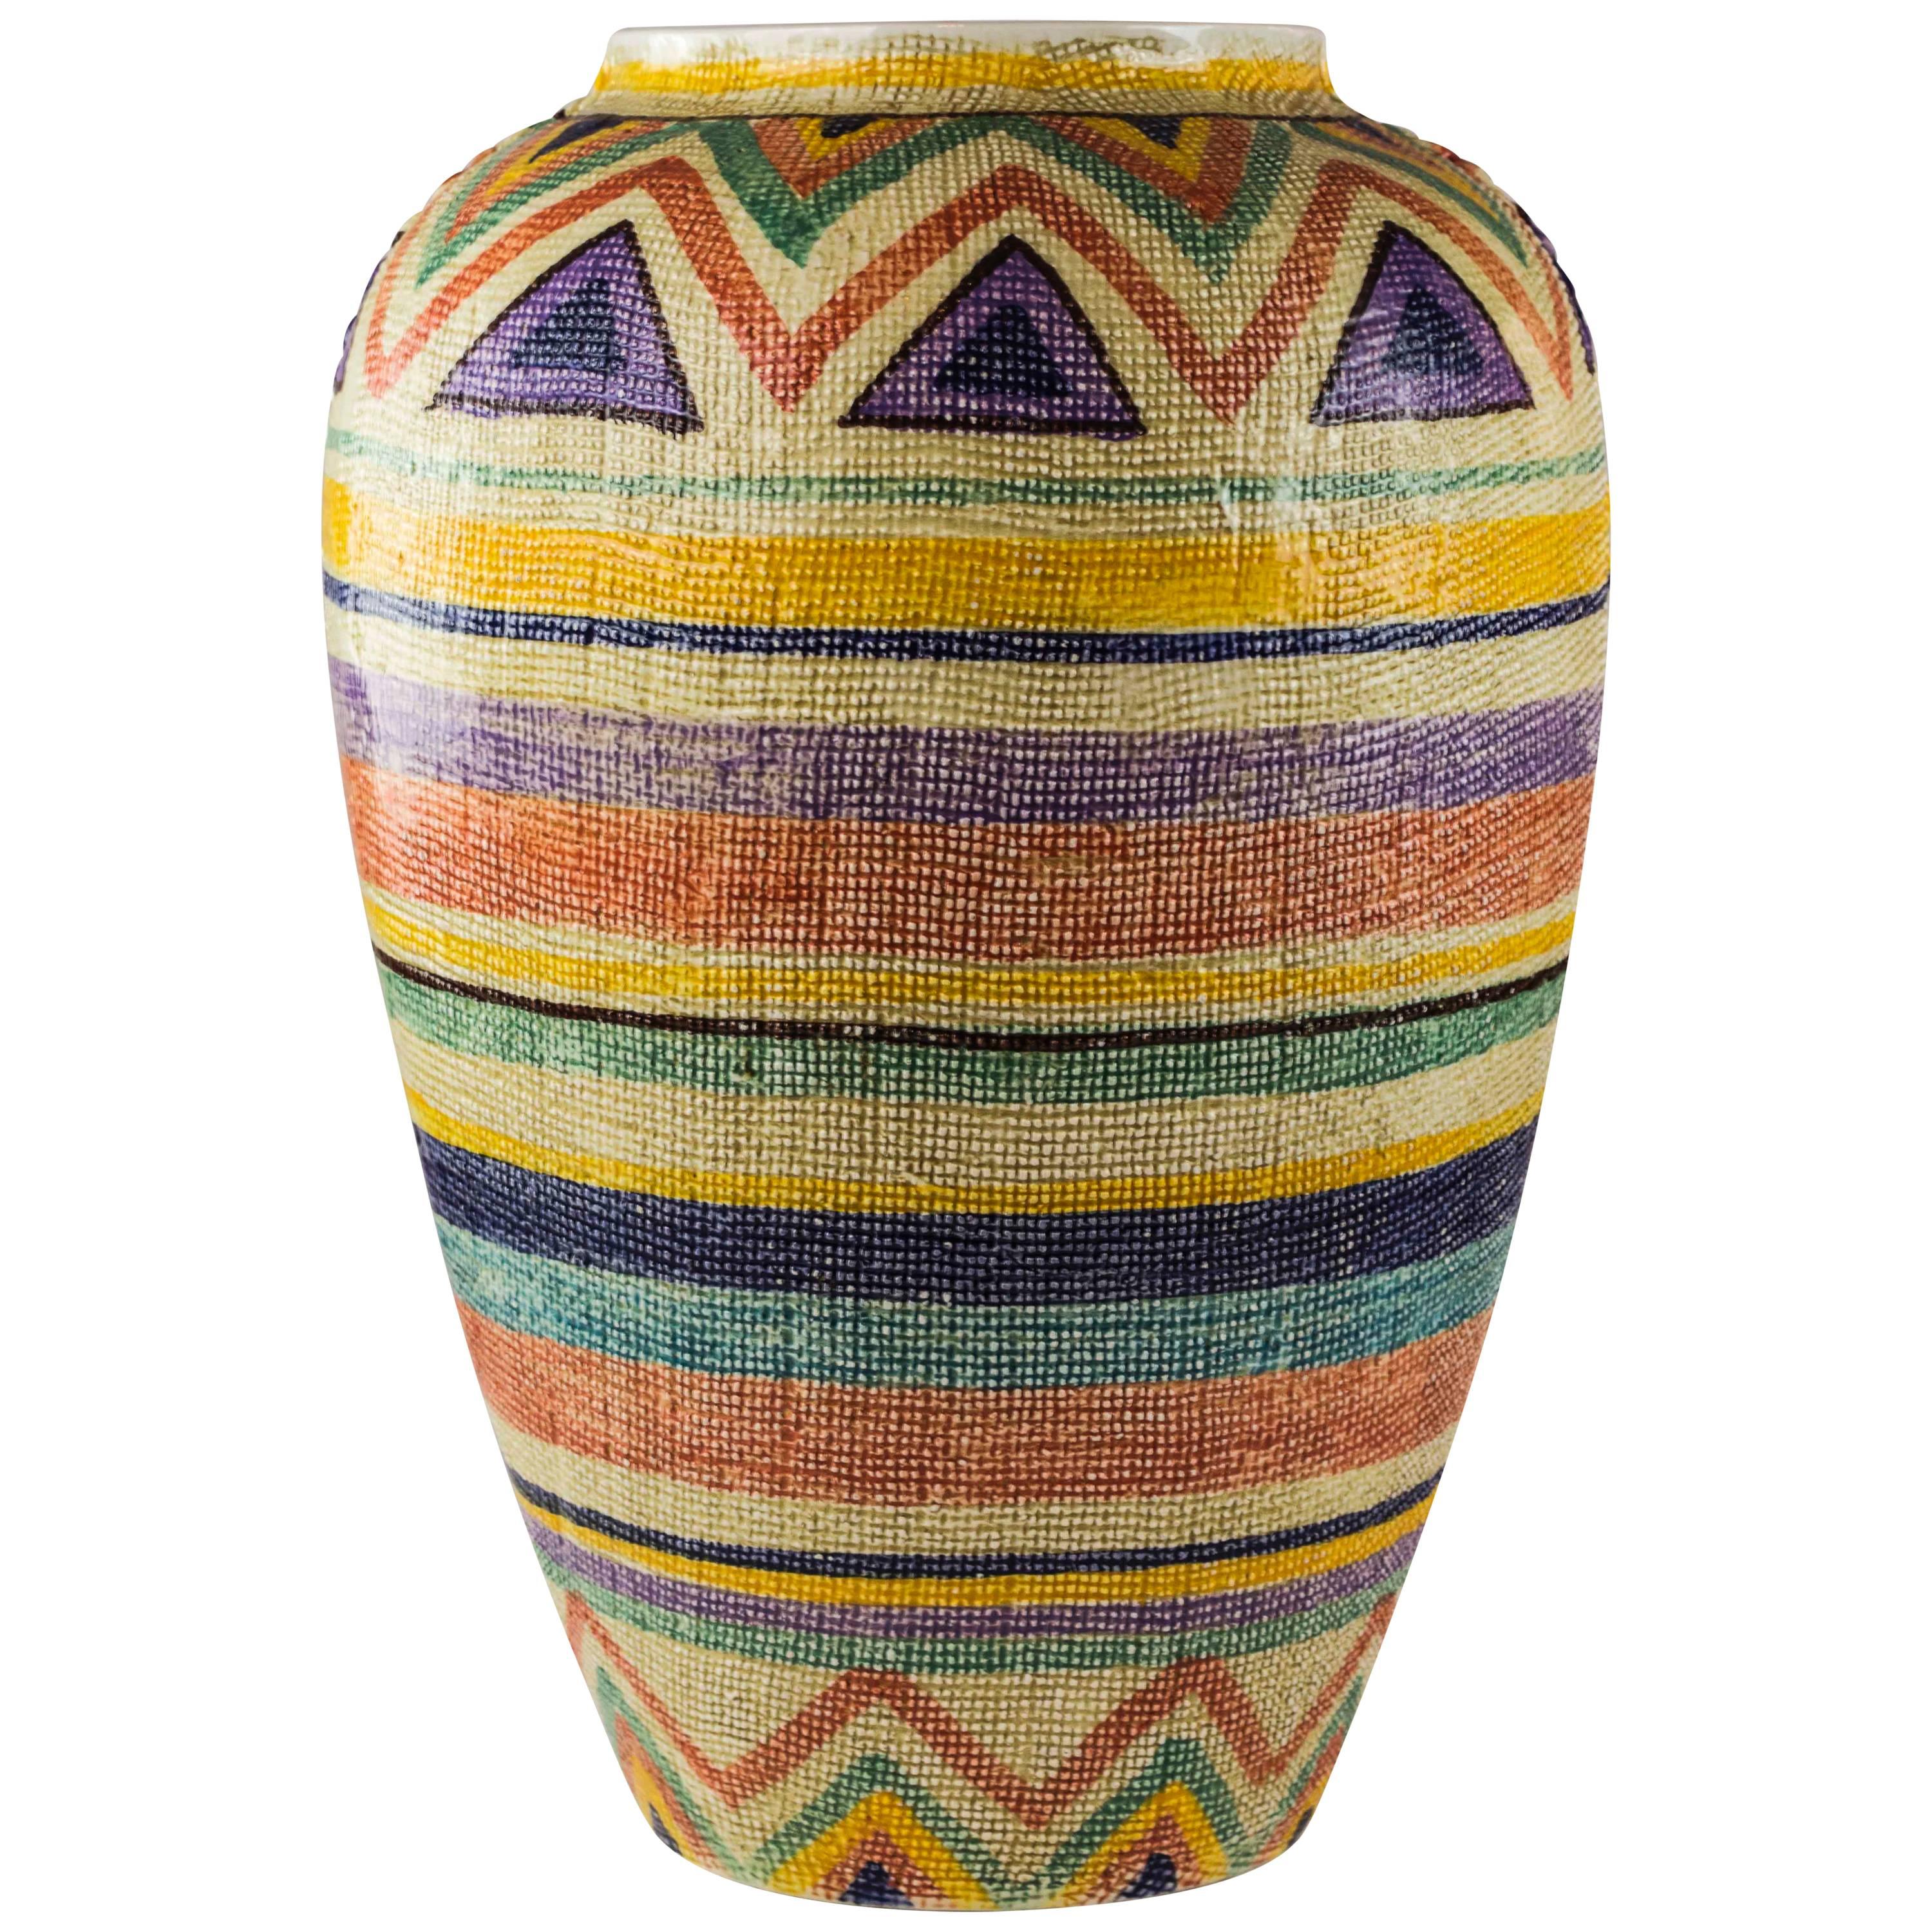 Italian Ceramic Woven Textured Floor Vase, Italy, 1970s